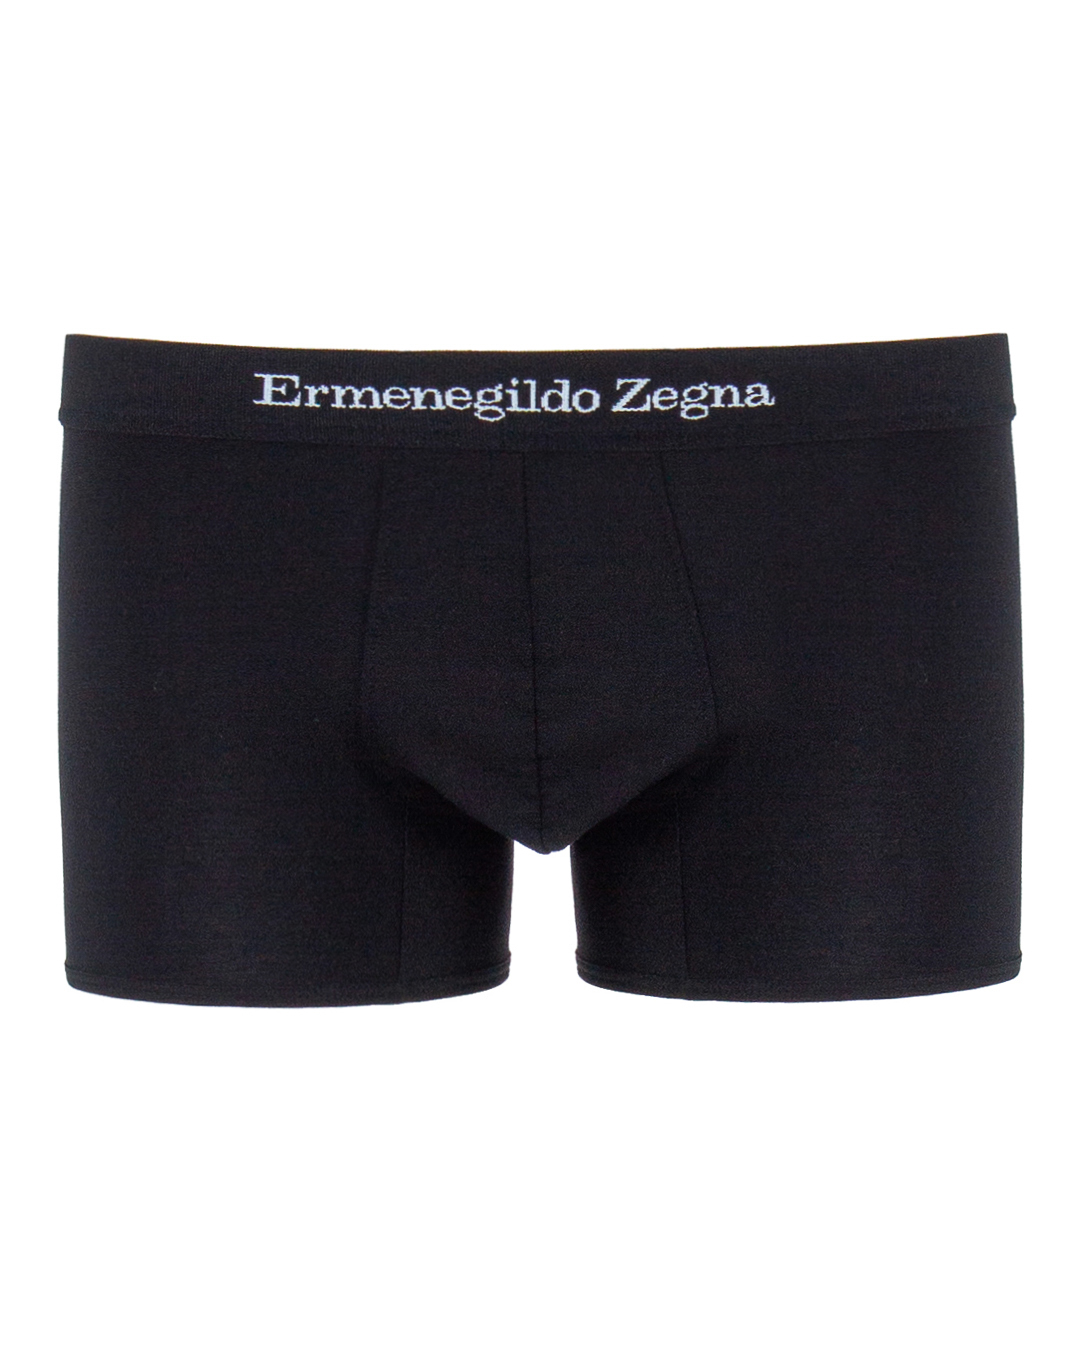 Ermenegildo Zegna с брендированной линией пояса  артикул  марки Ermenegildo Zegna купить за 3000 руб.